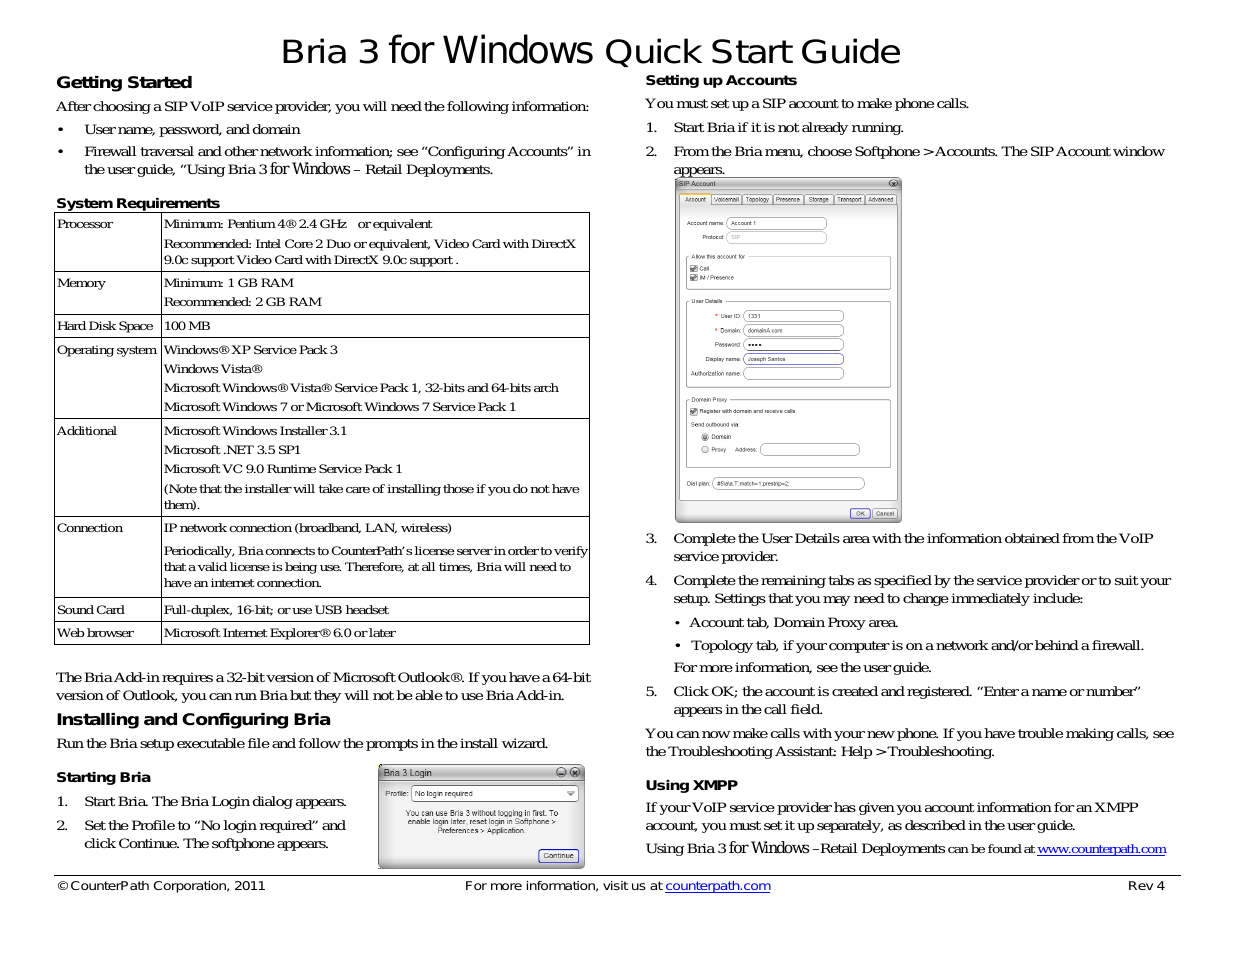 Bria 3.4 for Windows Quick Start Guide